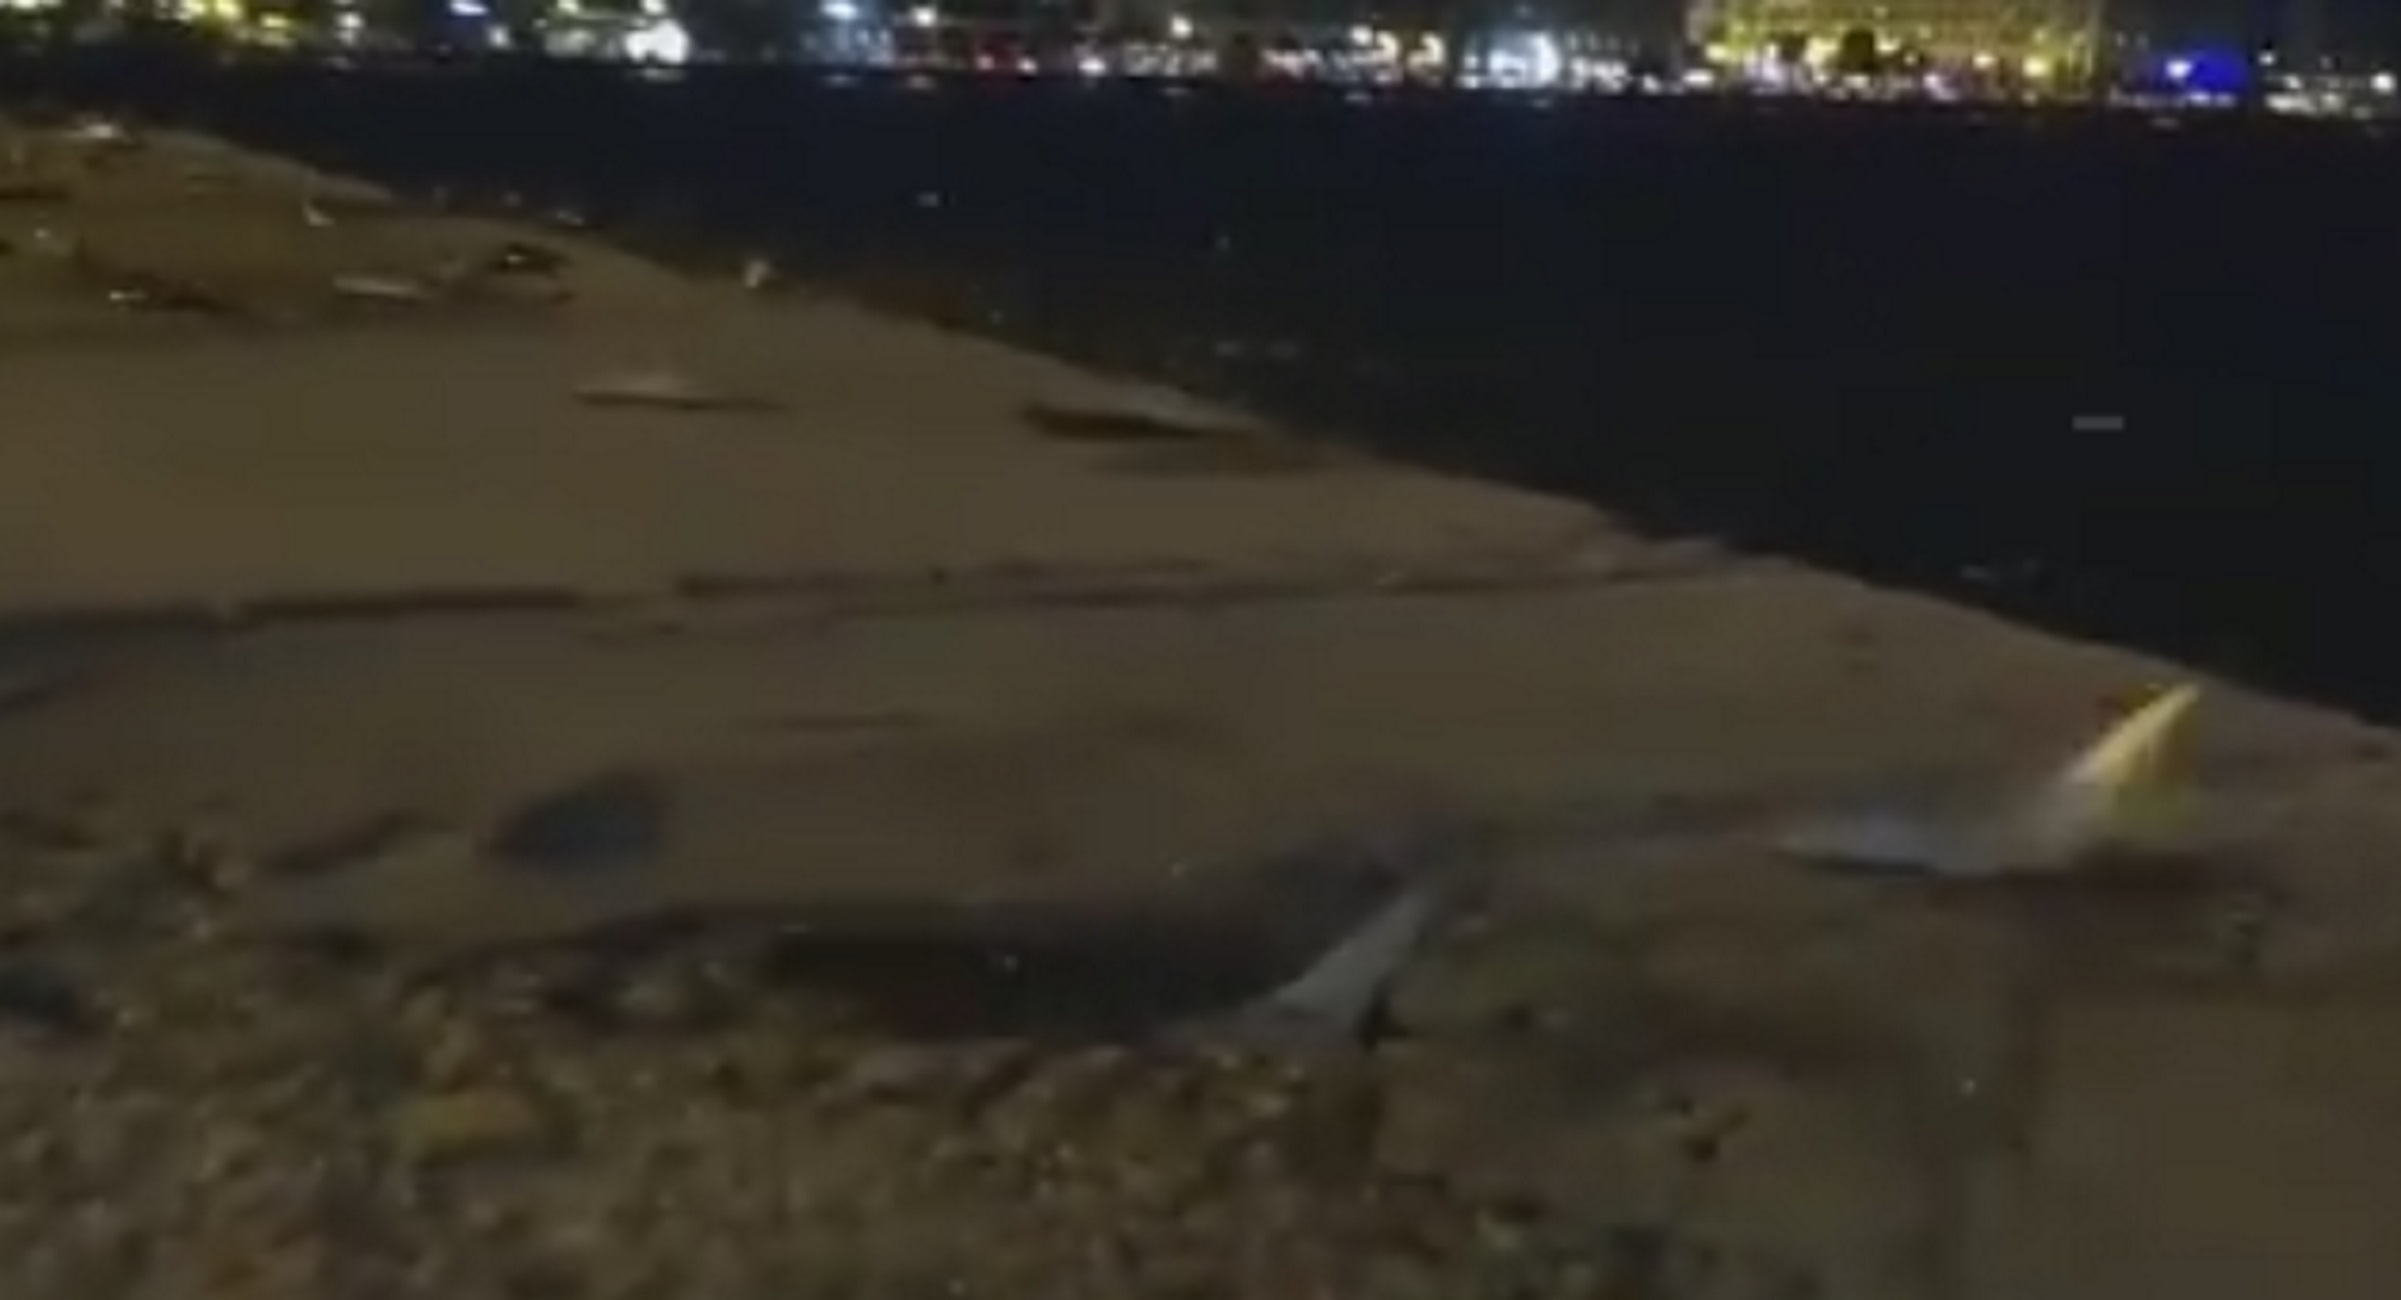 Θεσσαλονίκη: Η στιγμή που εκατοντάδες ψάρια πετάγονται ζωντανά από τη θάλασσα στη στεριά (Βίντεο)